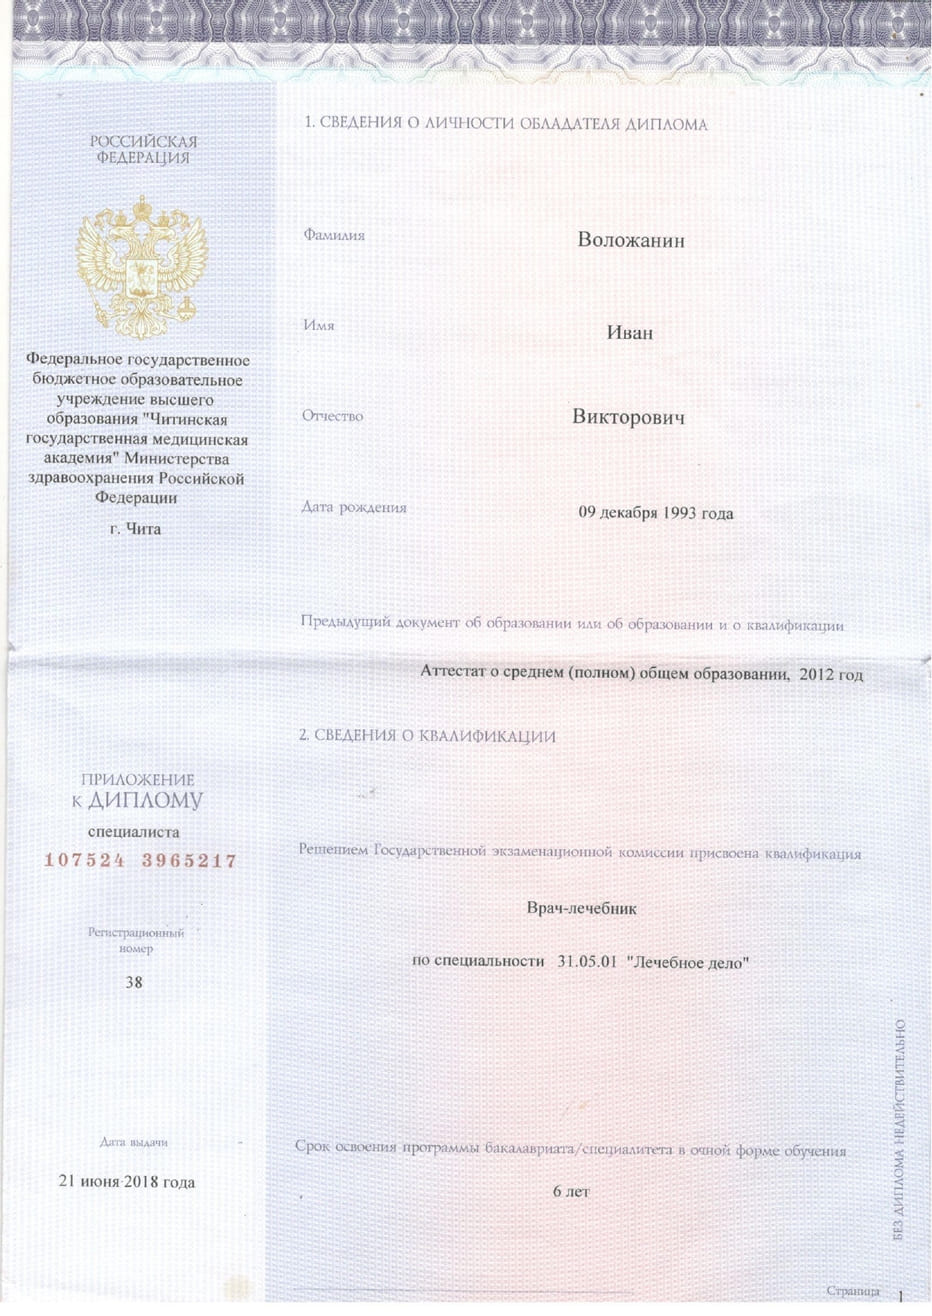 Диплом и сертификат  Воложанин Иван Викторович